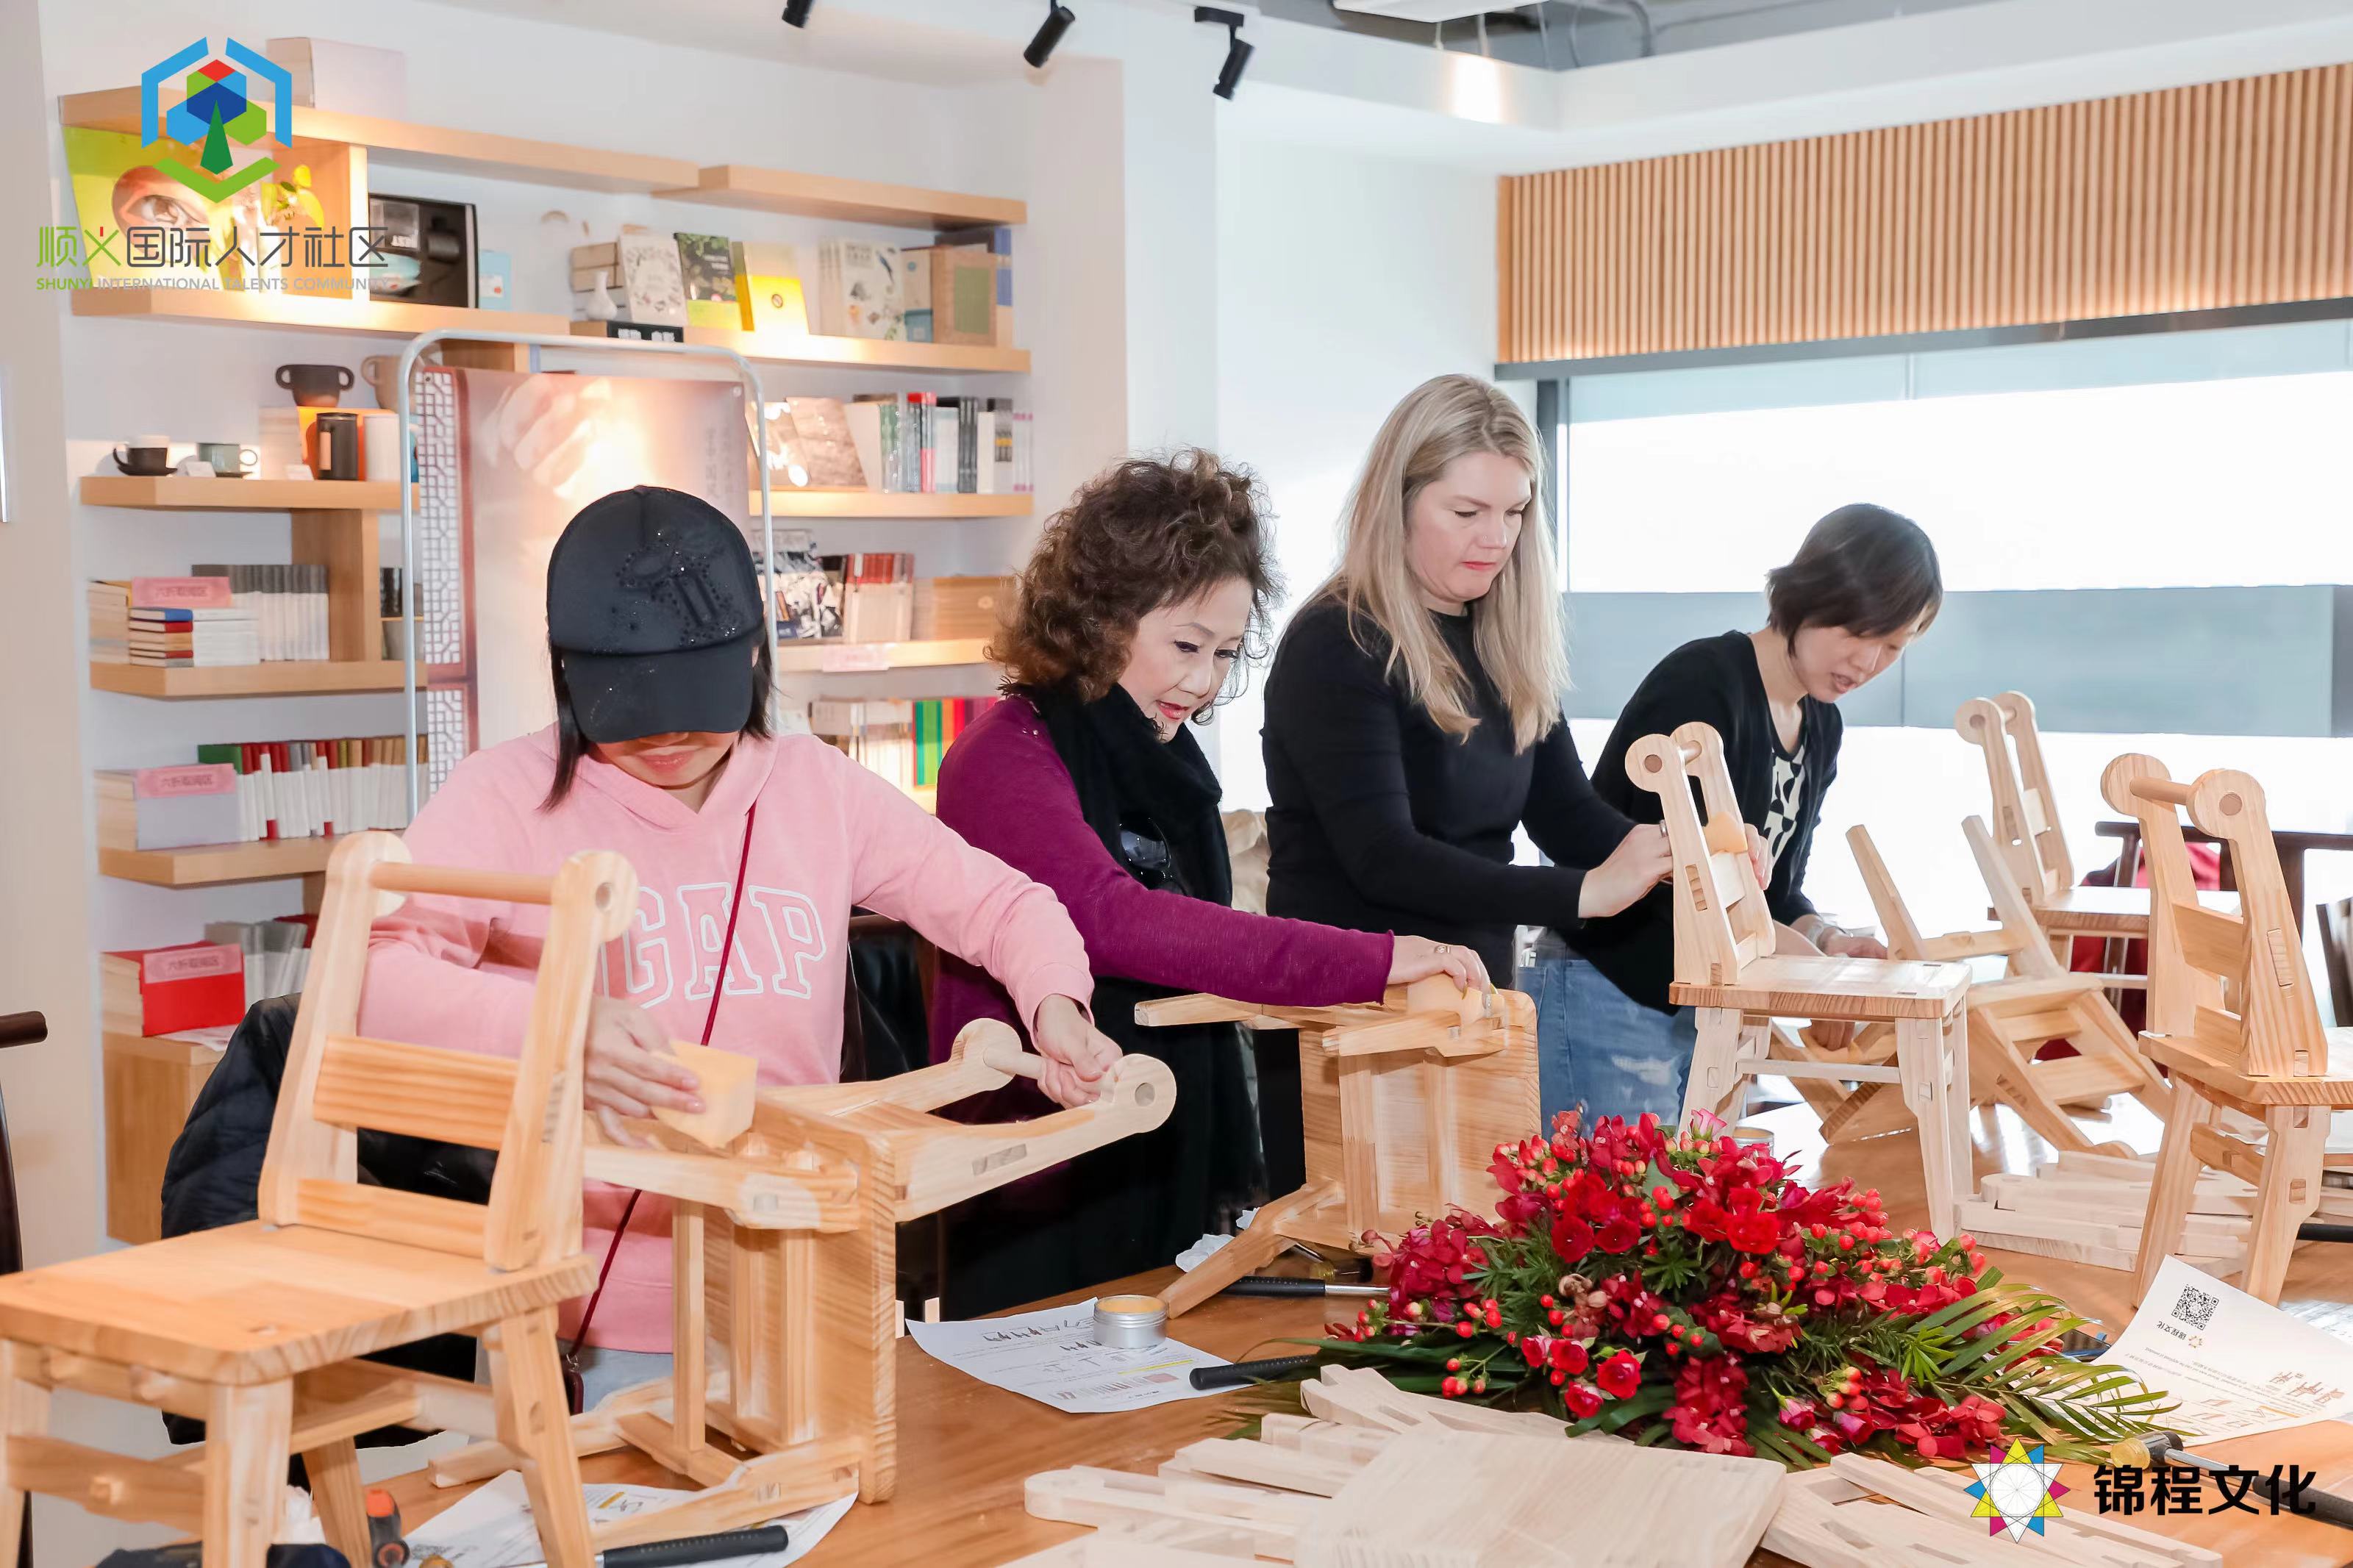 非遗木艺 匠心传承 北京顺义国际人才社区开展榫卯木凳制作体验活动